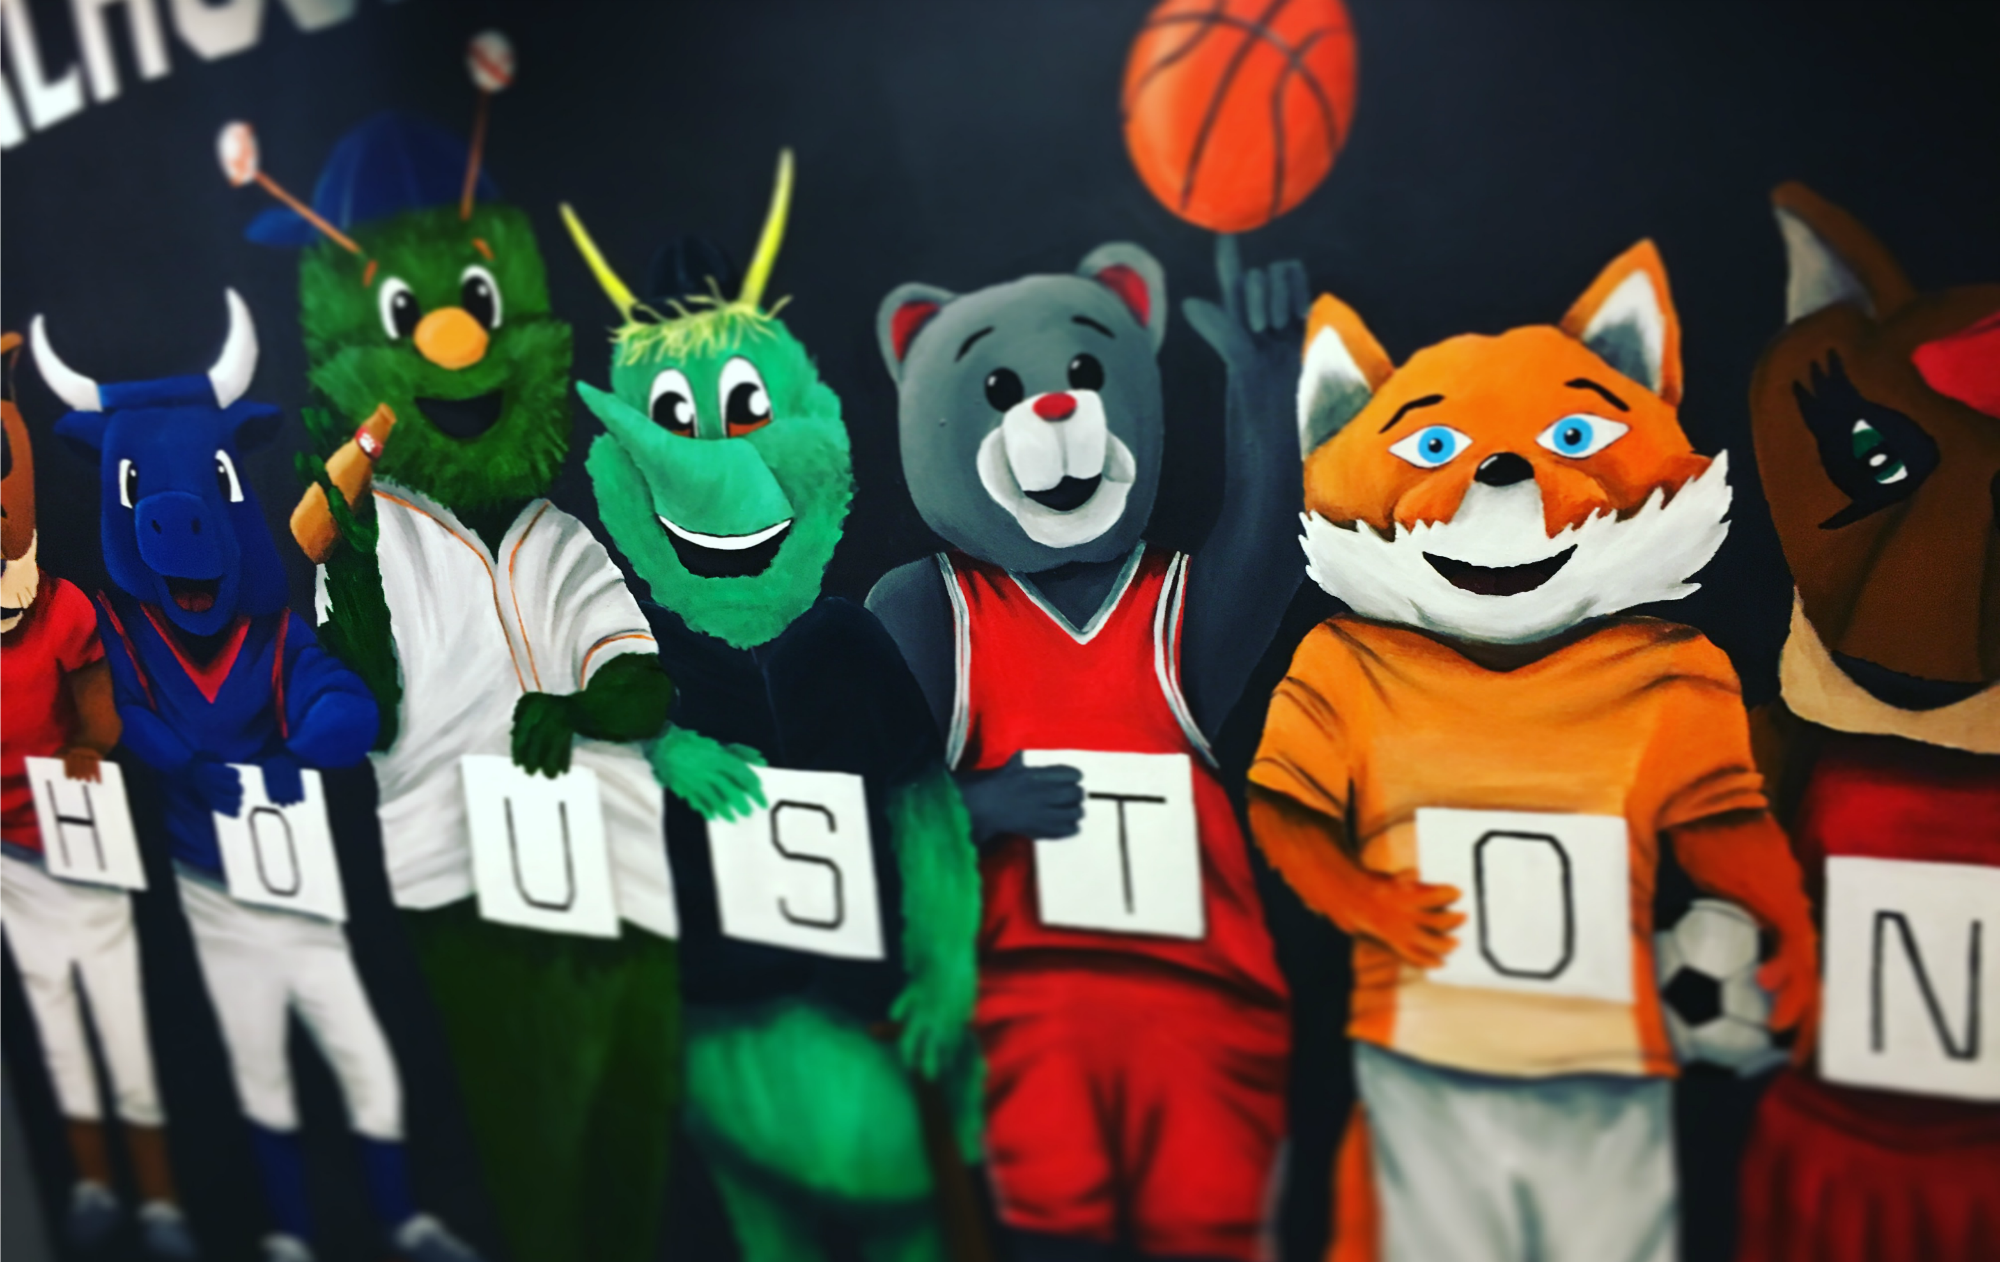 Houston Sports Mascots - MHagerty